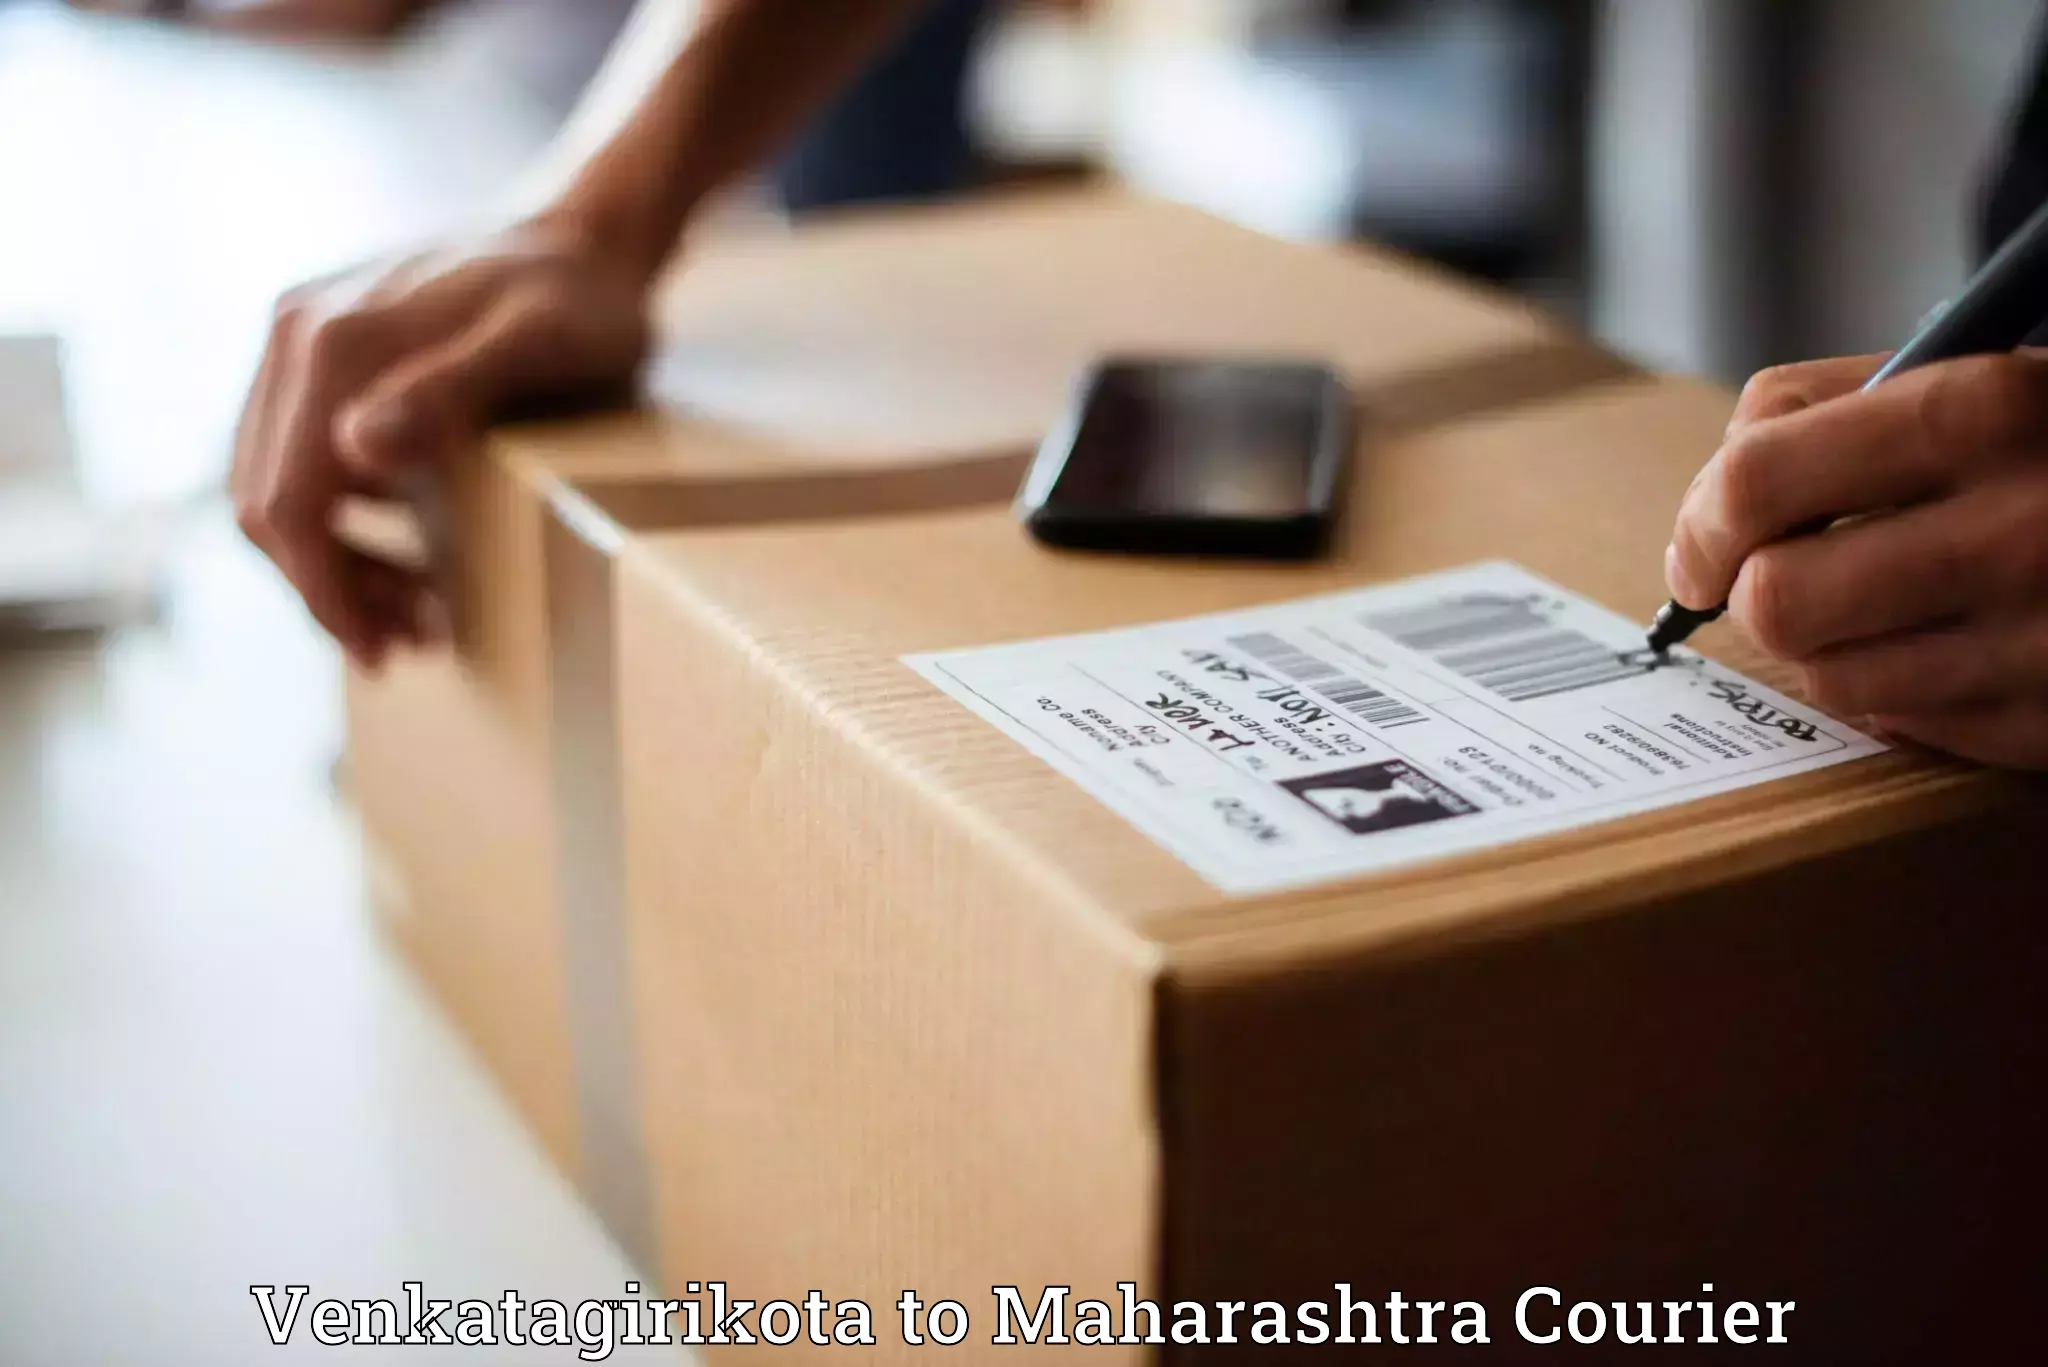 Express courier capabilities Venkatagirikota to Nashik